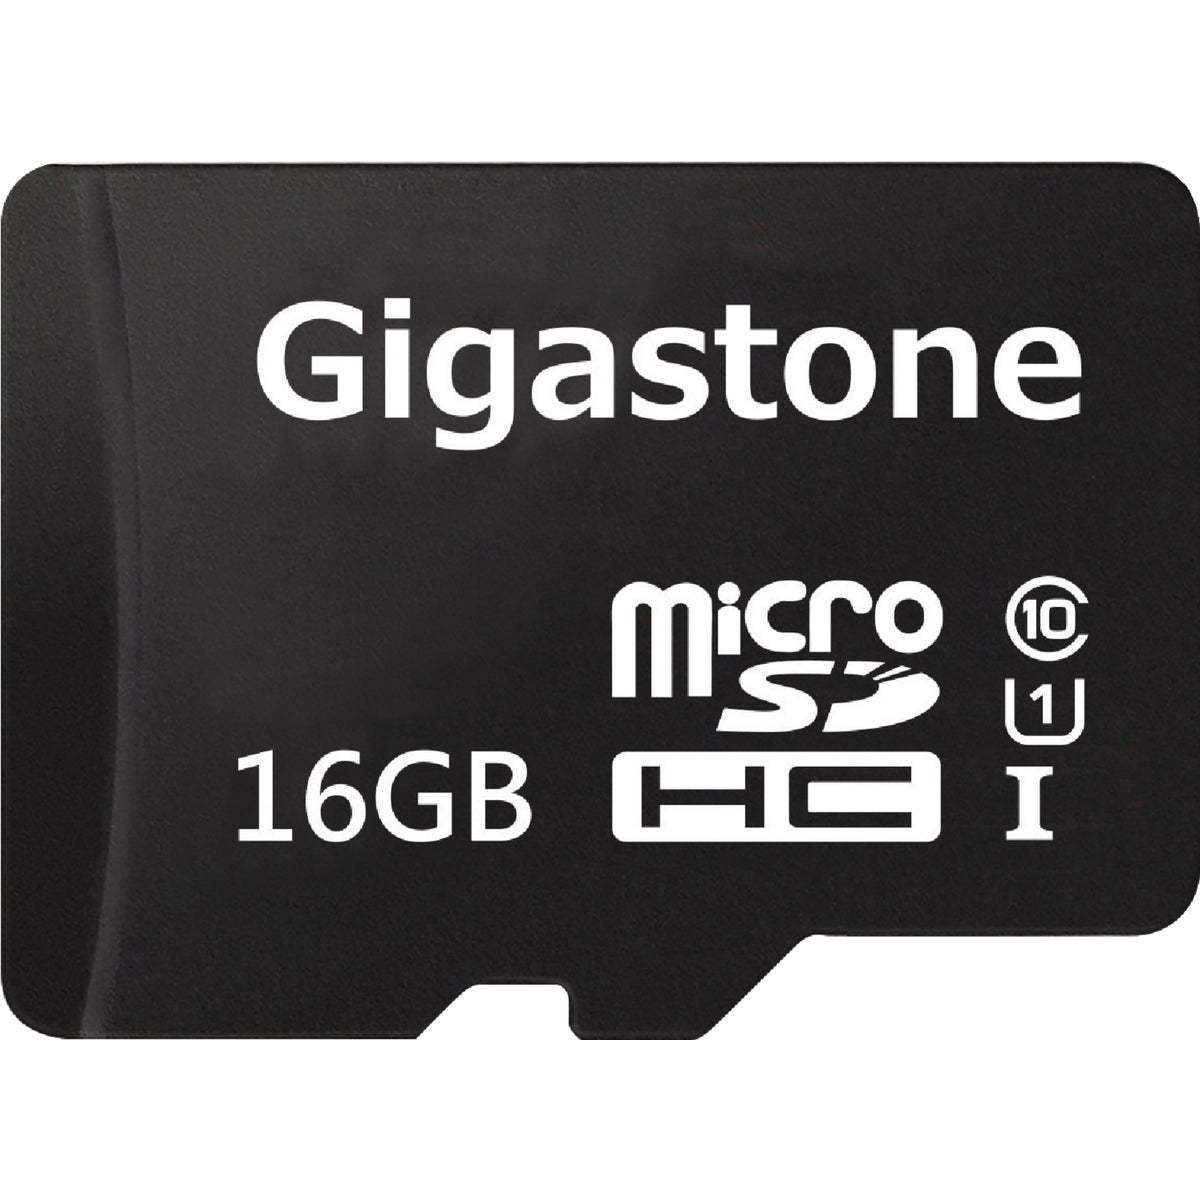 Item 502287, MicroSD card 2-in-1 kit.